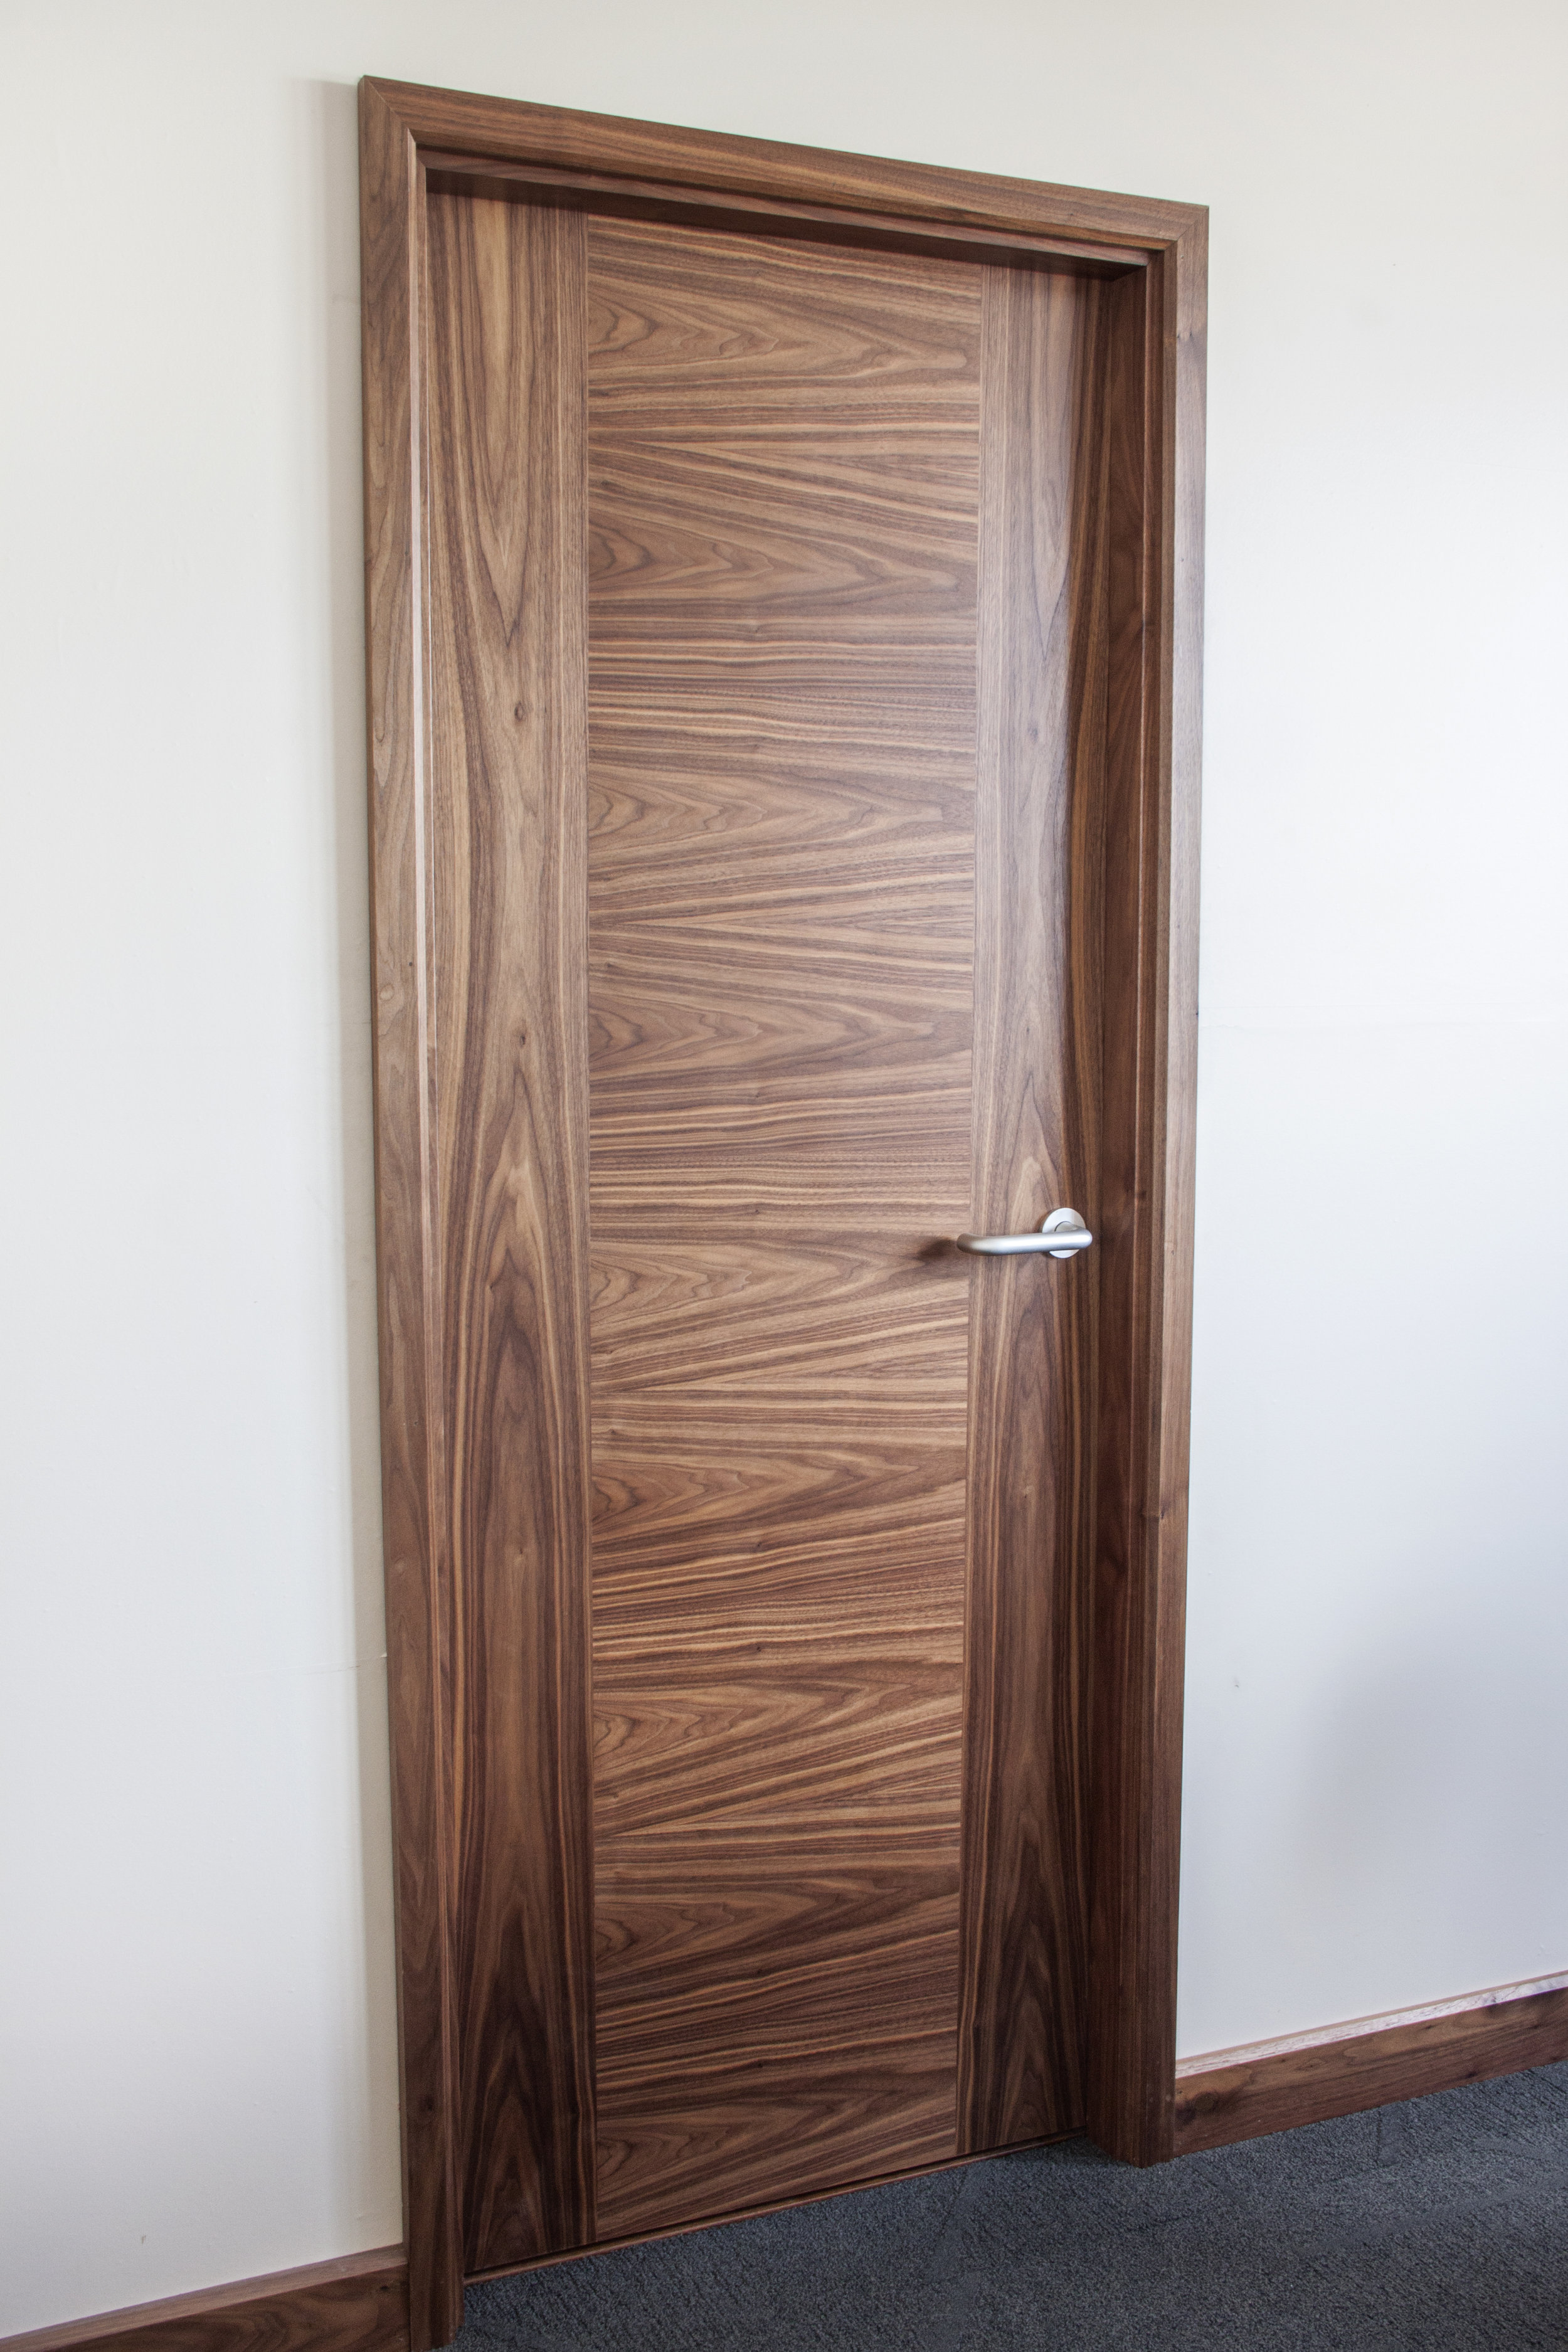 Walnut door set with horizontal veneer